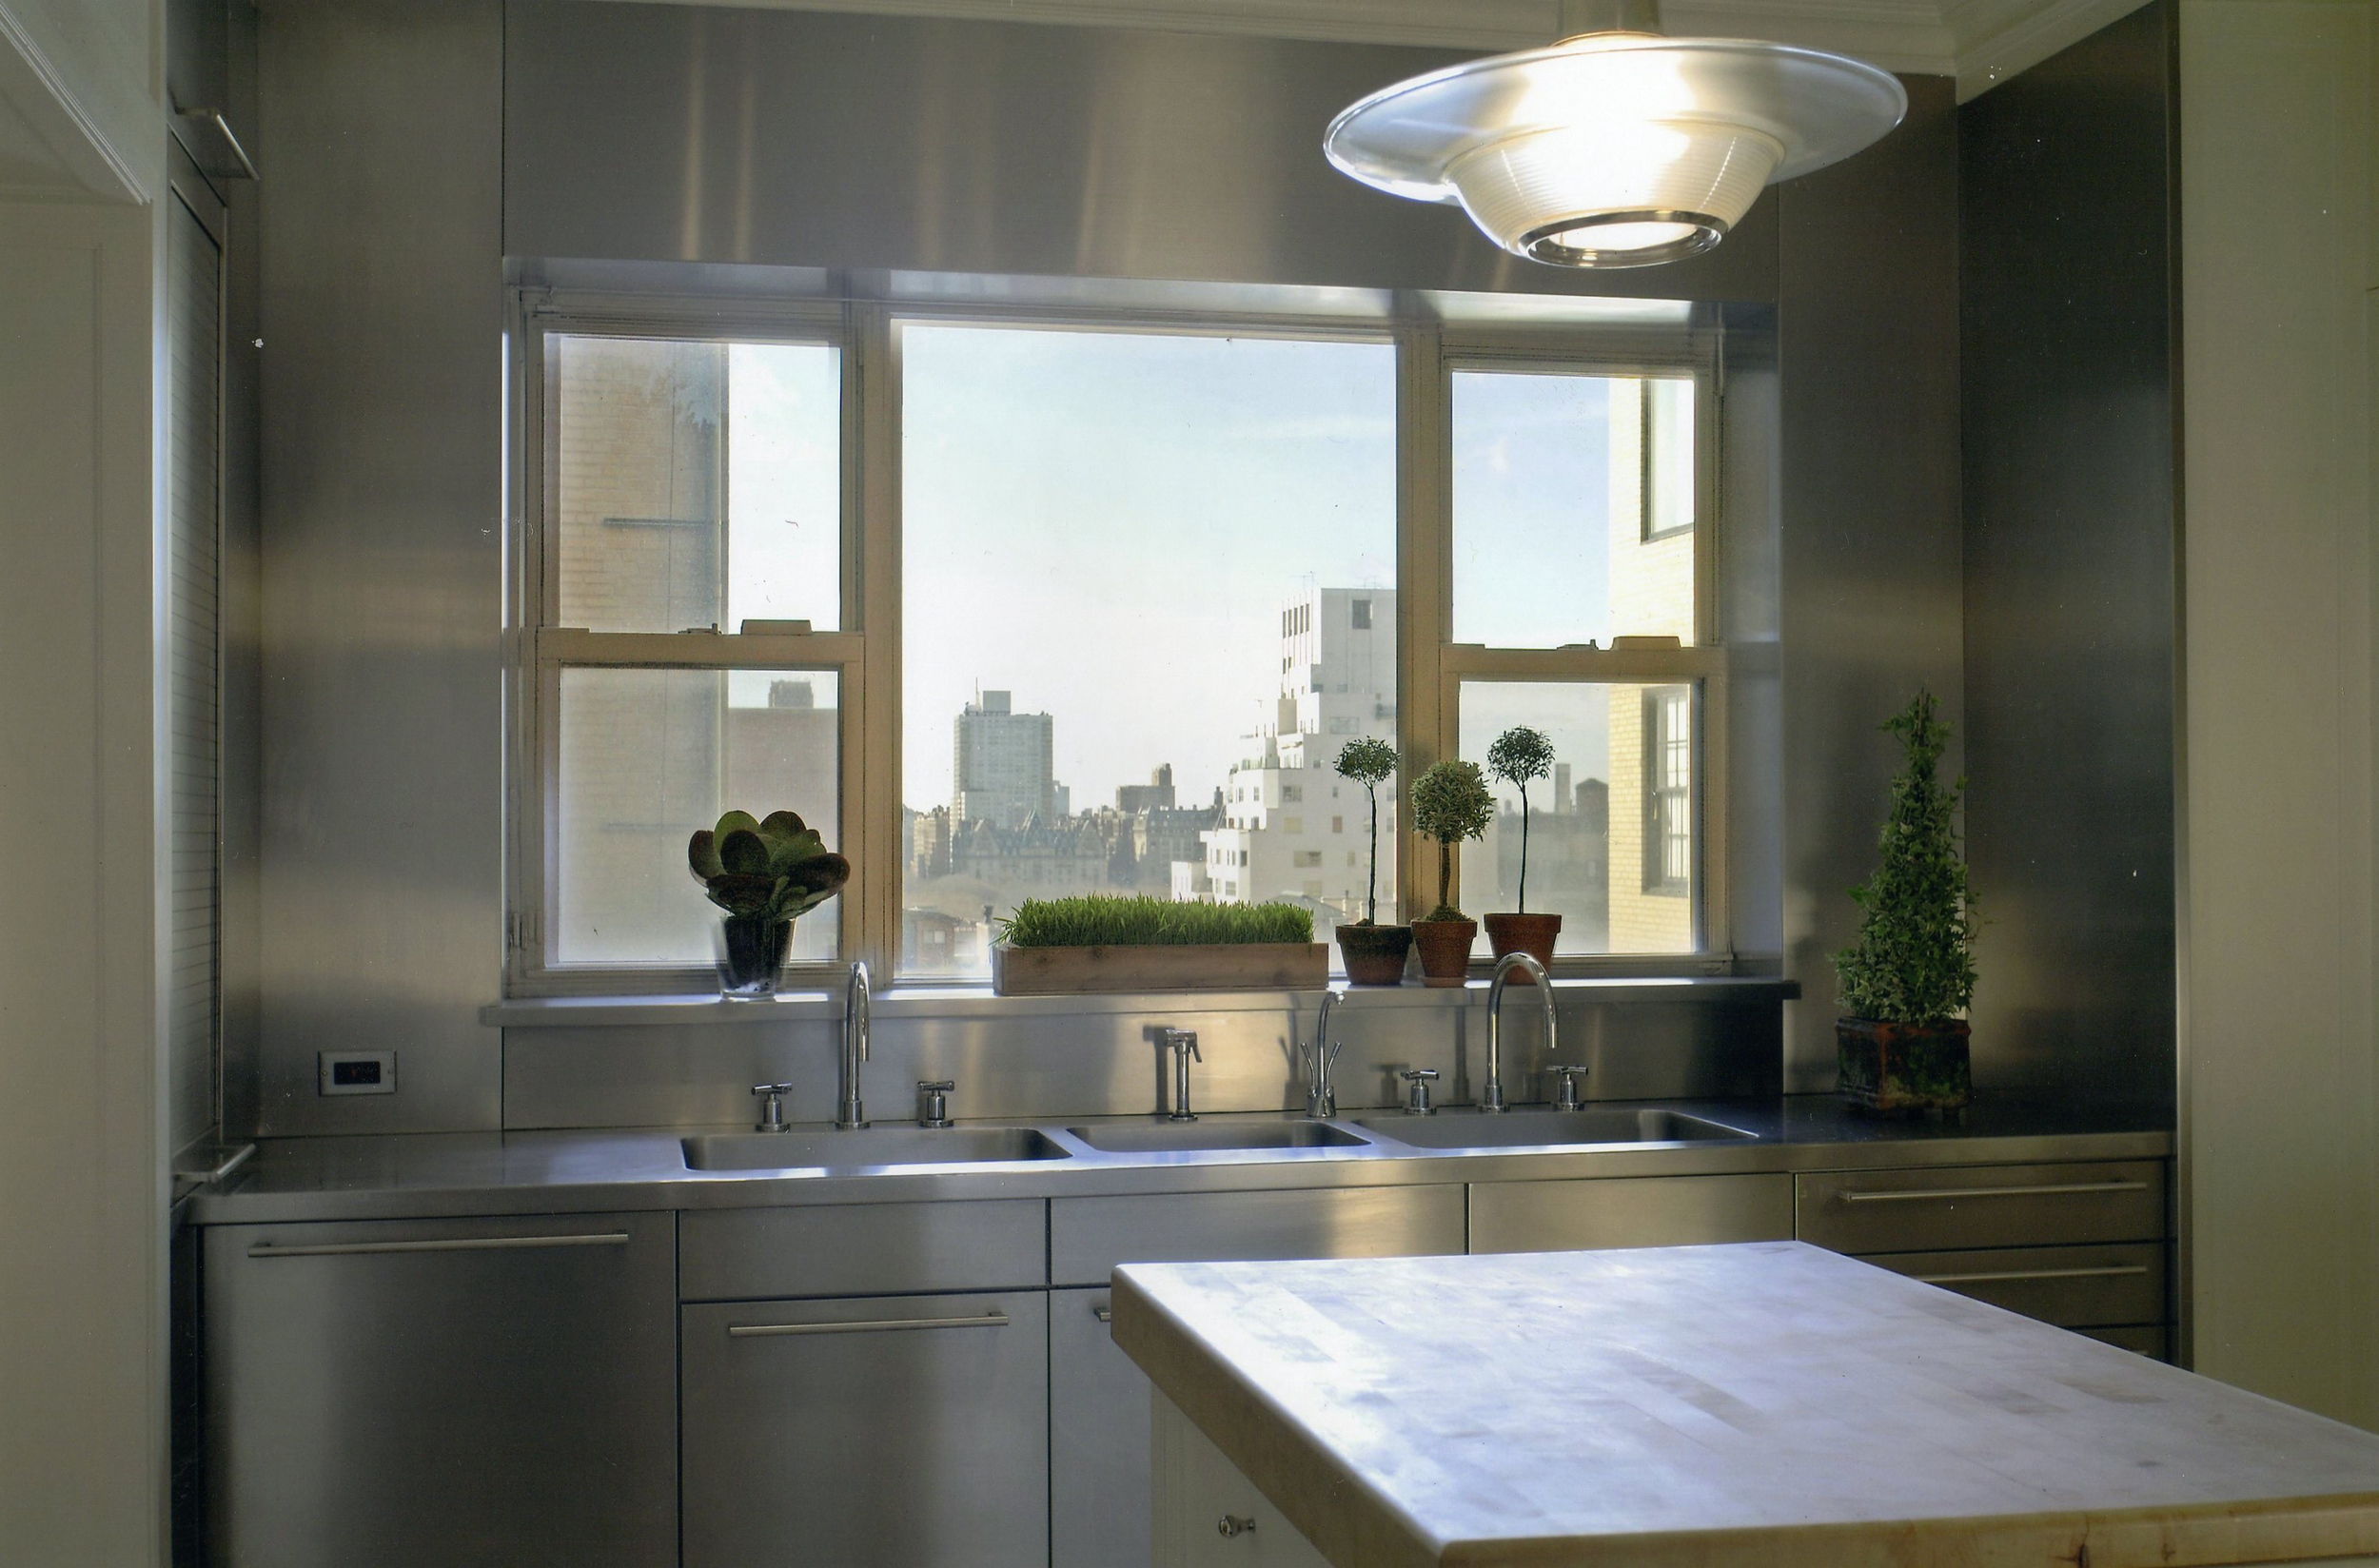 Kitchen - Window.jpg